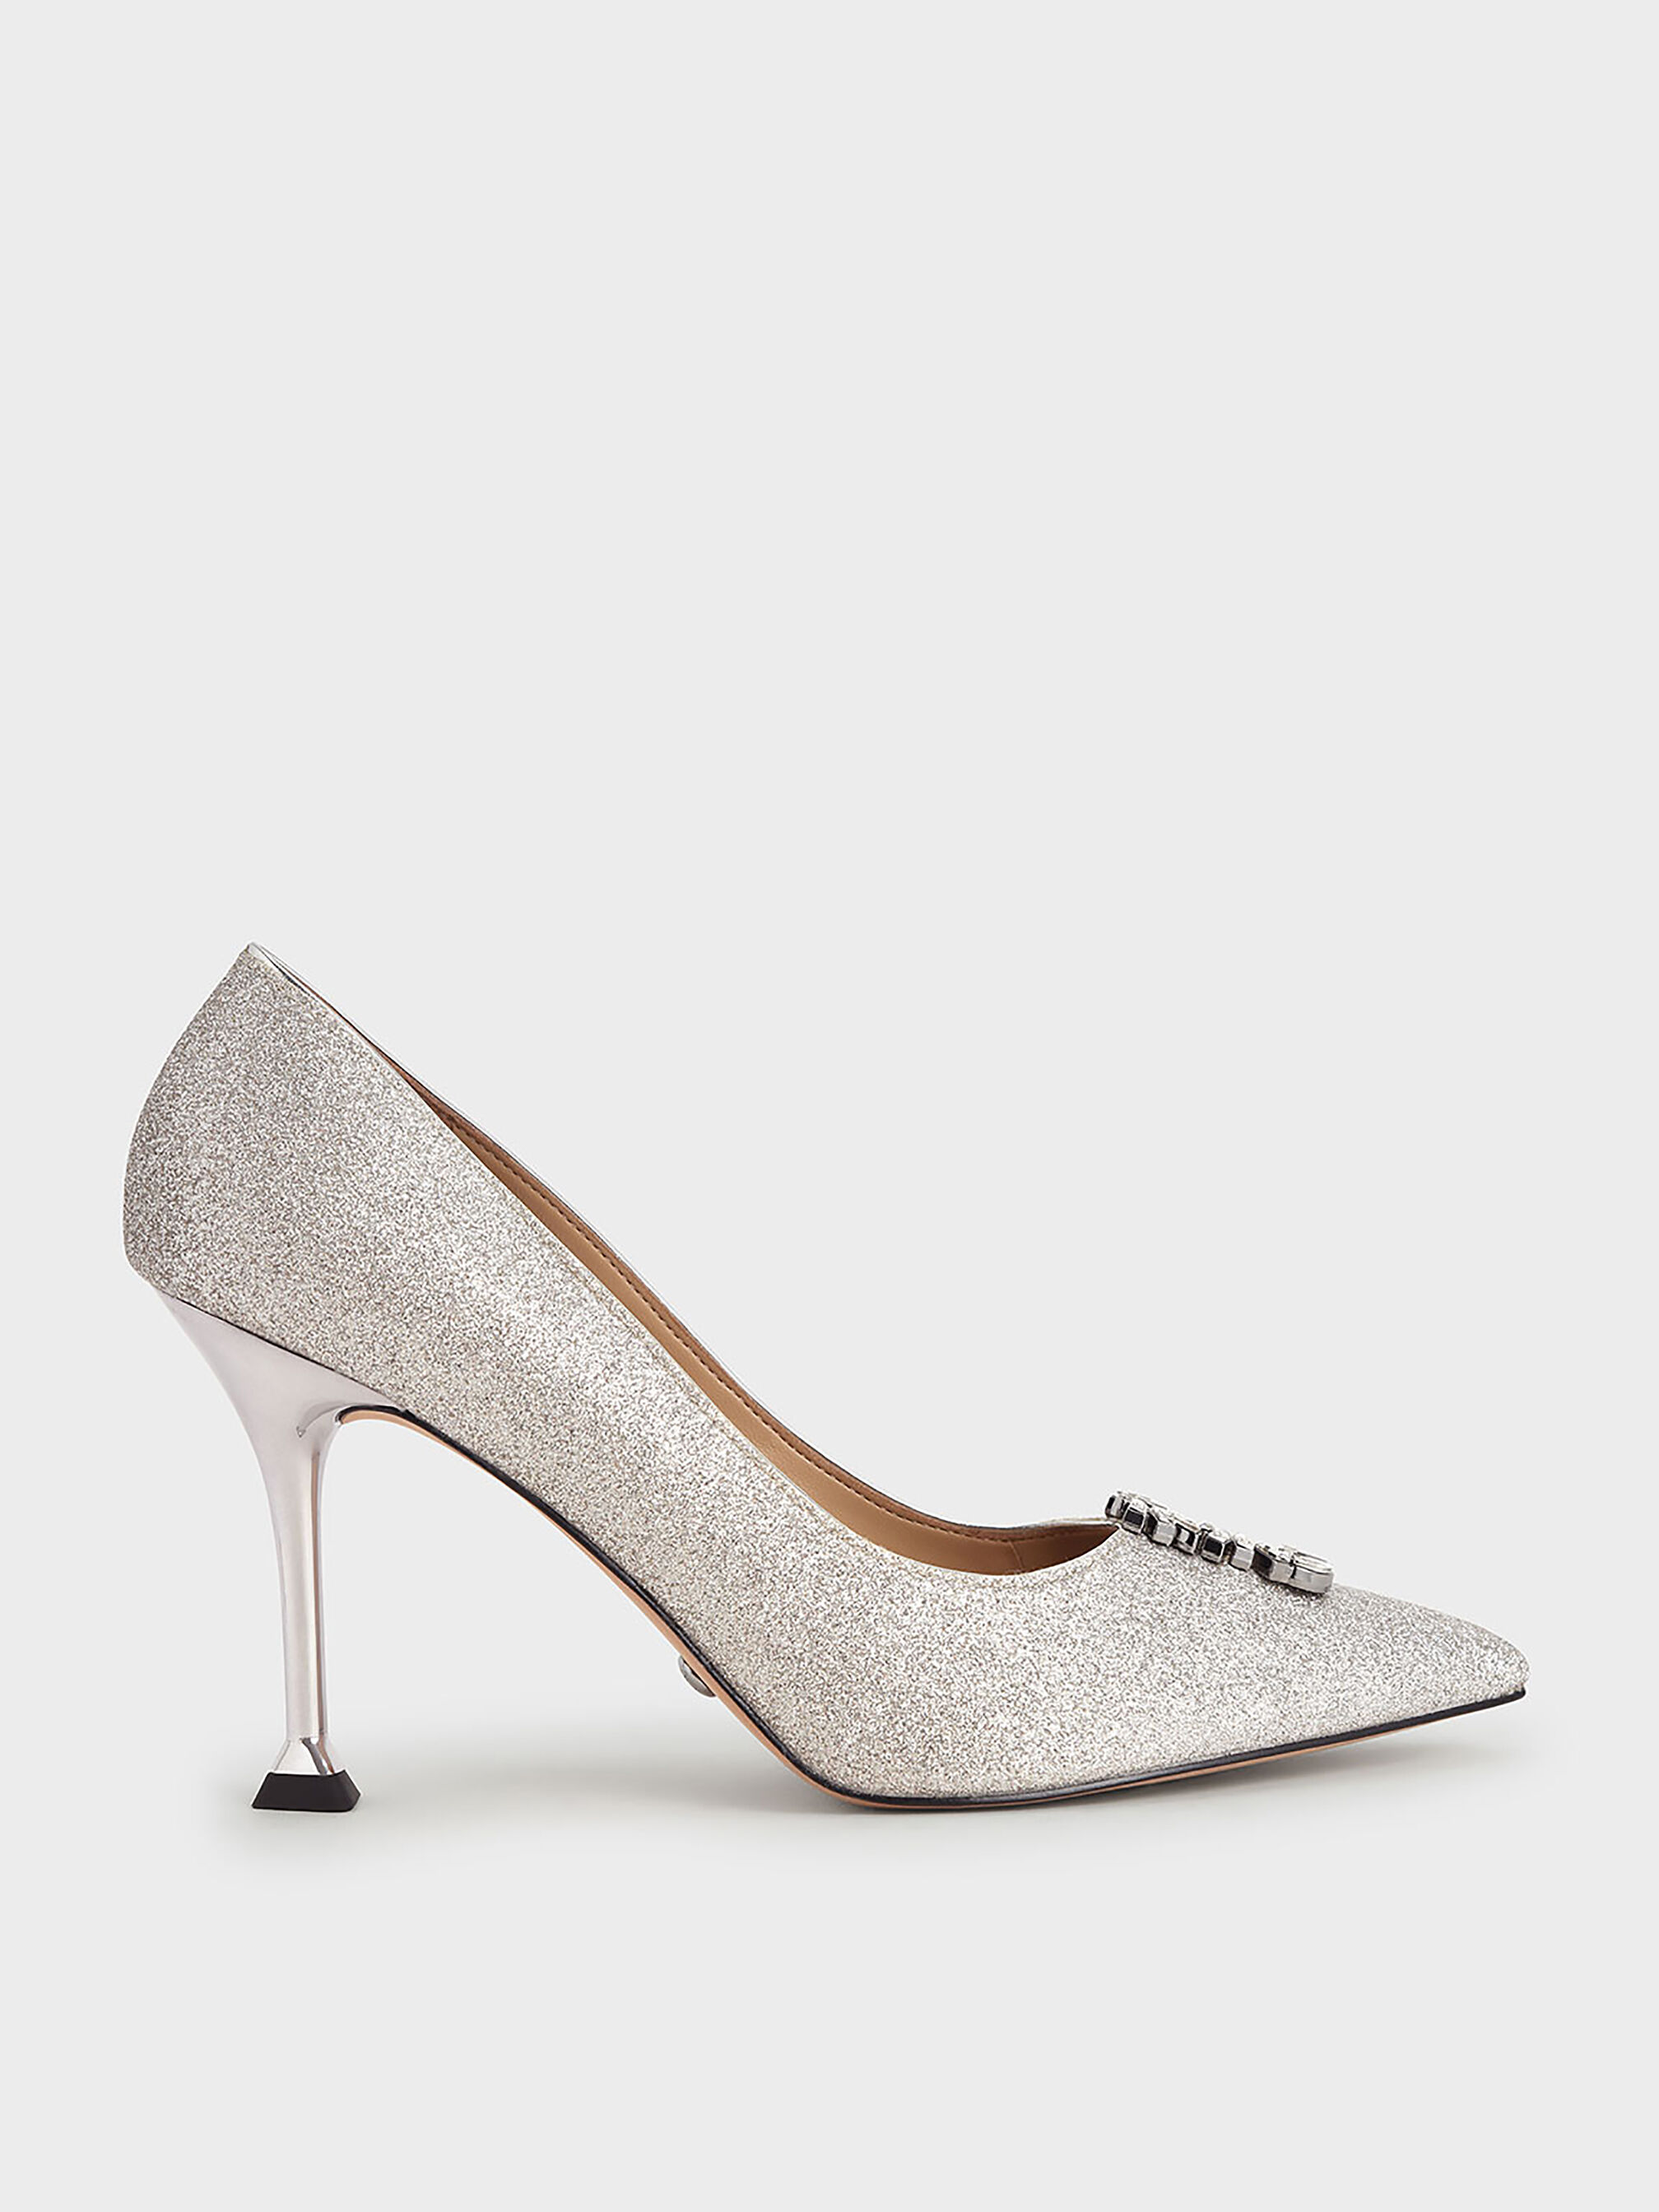 Silver Low Open Toe Heel 4184Silver / 7W | Silver dress shoes, Prom heels, Silver  heels prom